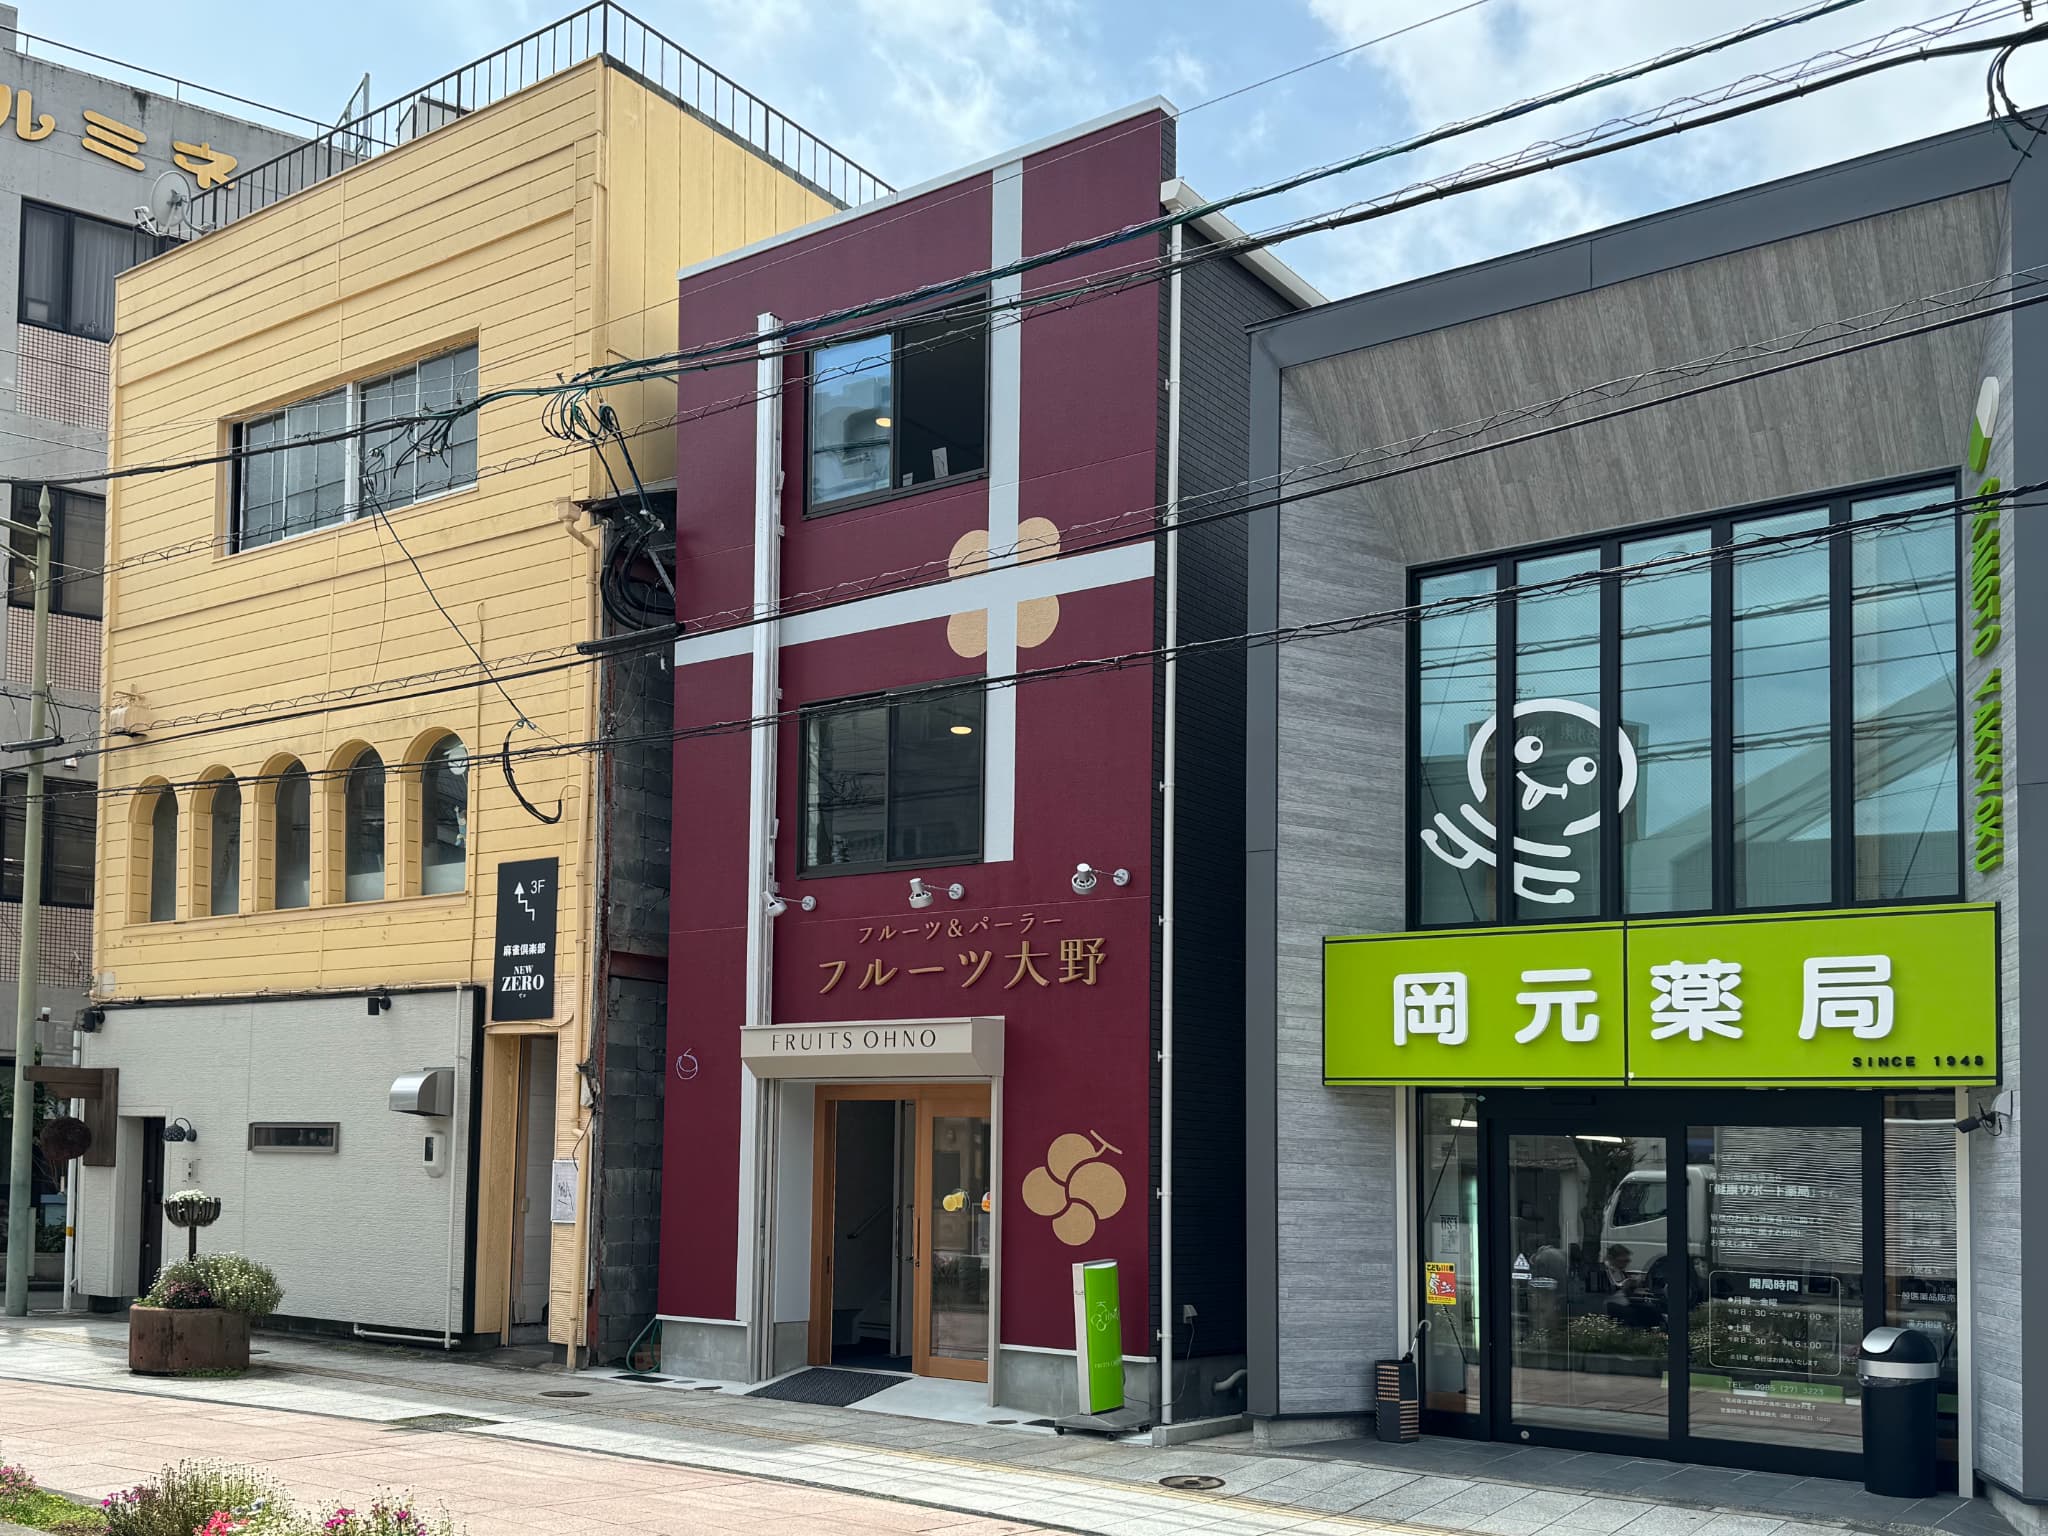 宮崎の老舗フルーツ&パーラー【フルーツ大野】が新装オープン！